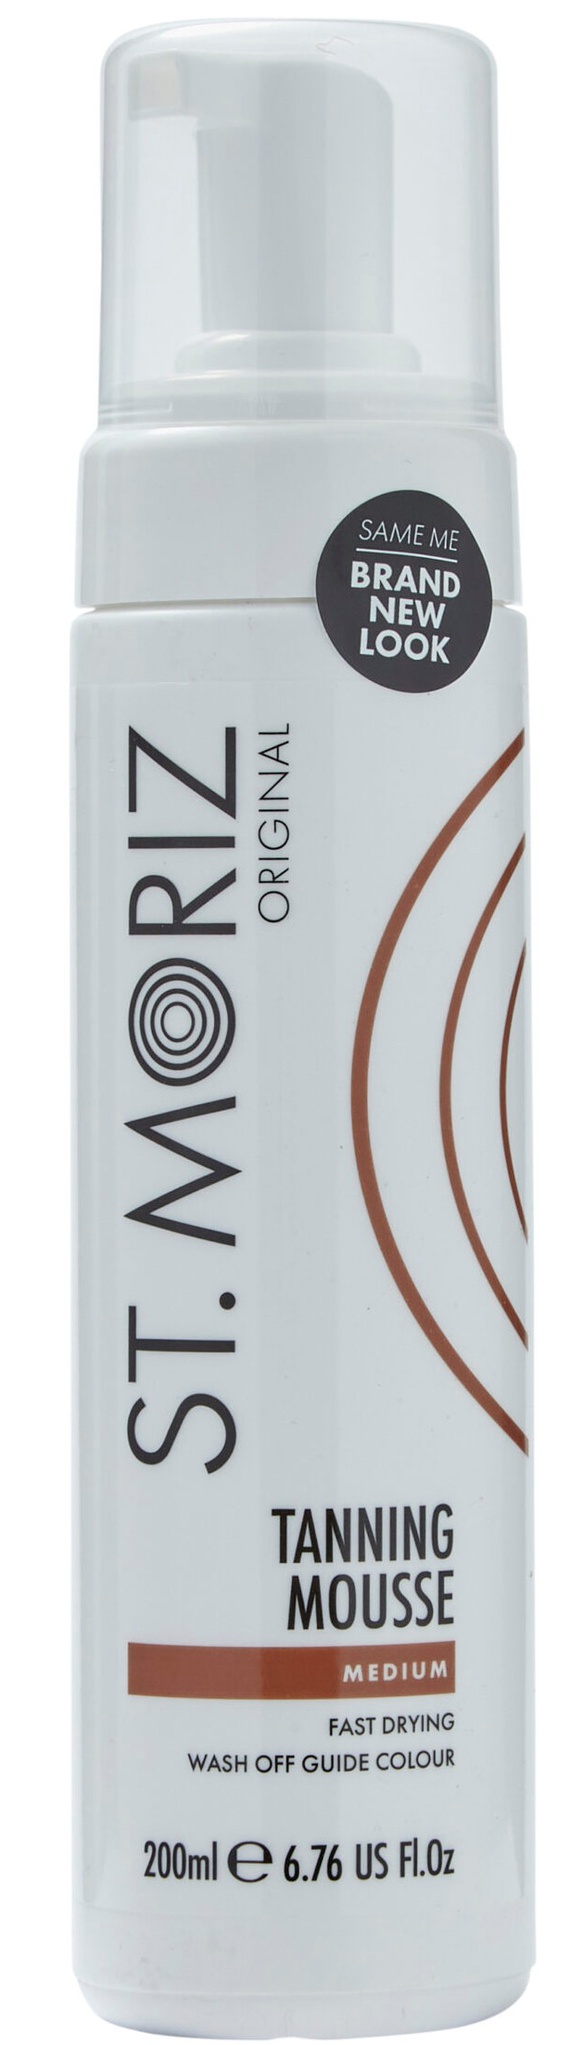 St. Moriz Original Tanning Mousse Medium